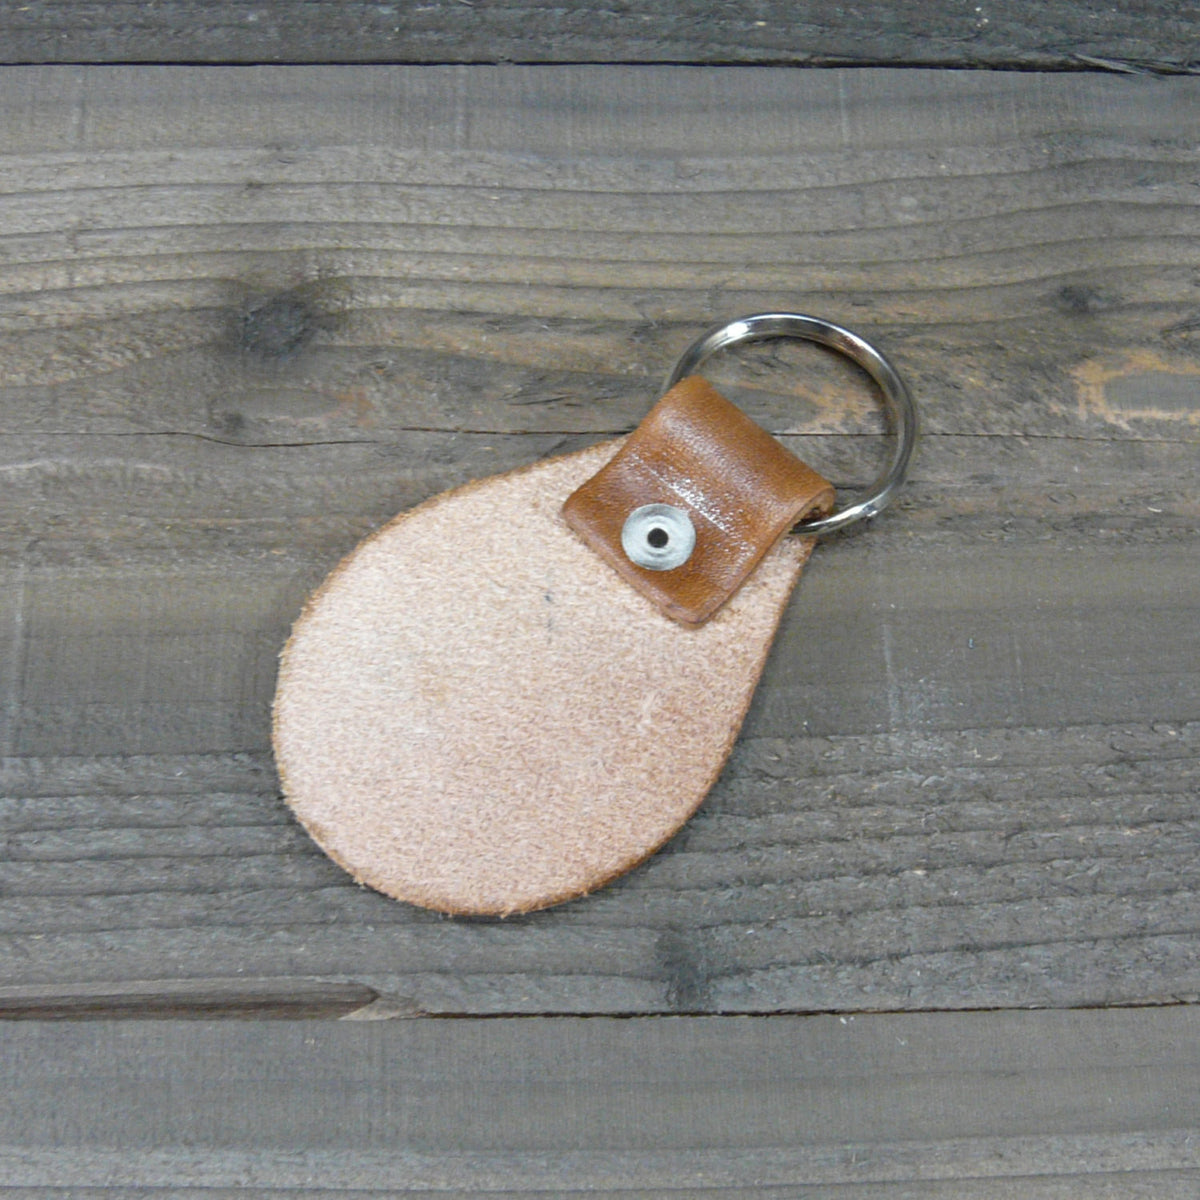 Leaf Leather Key Ring Key Fob Tooled Leaf Design Key Chain 